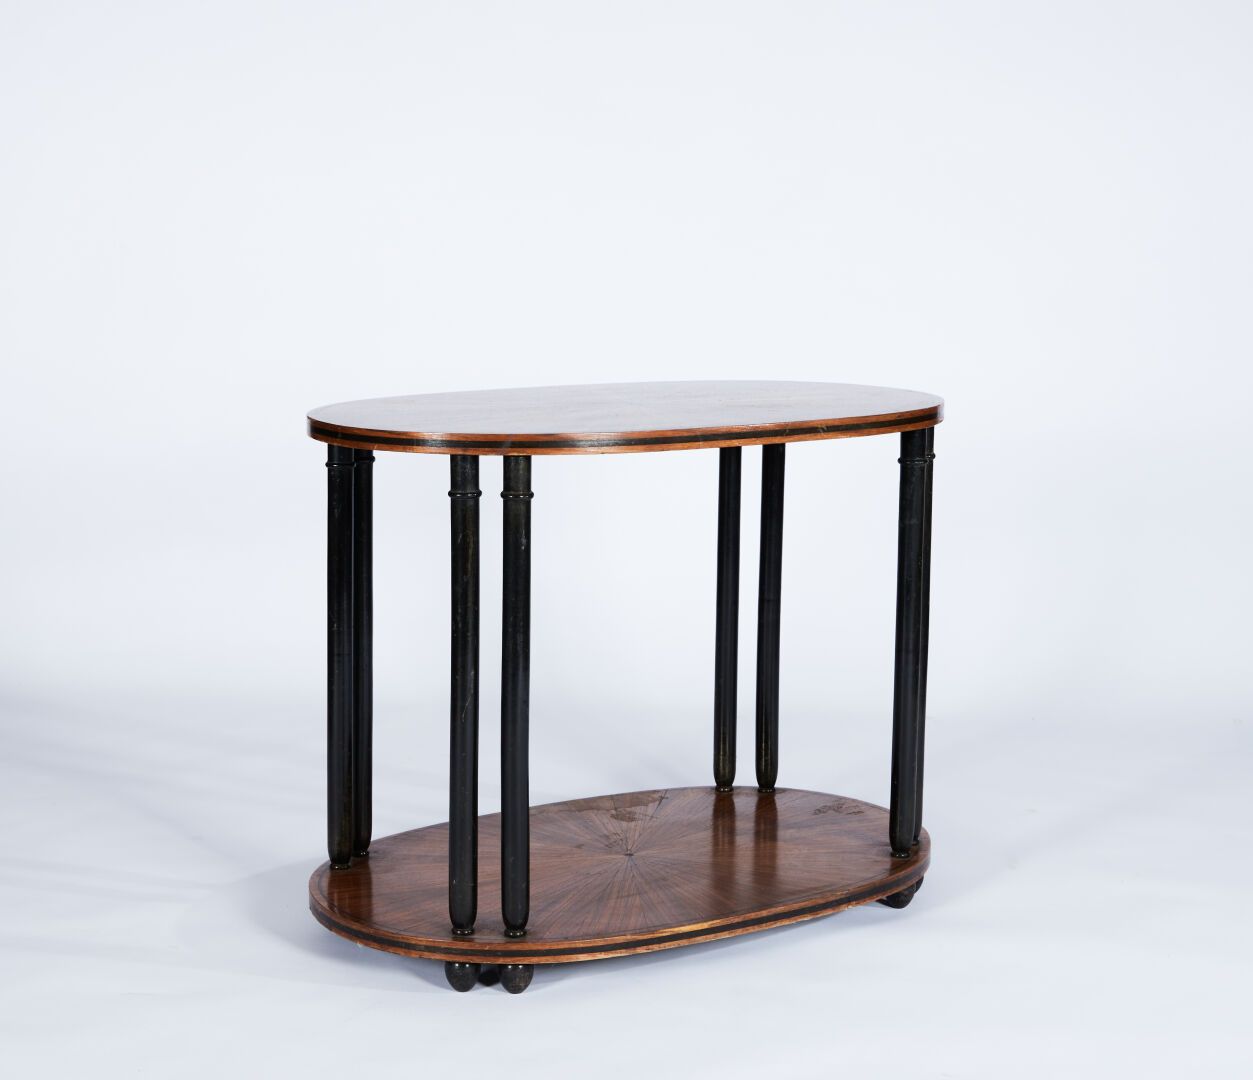 Null 杜弗斯内-莫里斯（1876-1955）的品味
镶嵌有两个托盘的基座桌和熏黑的木材
61 x 81 x 50,5 cm